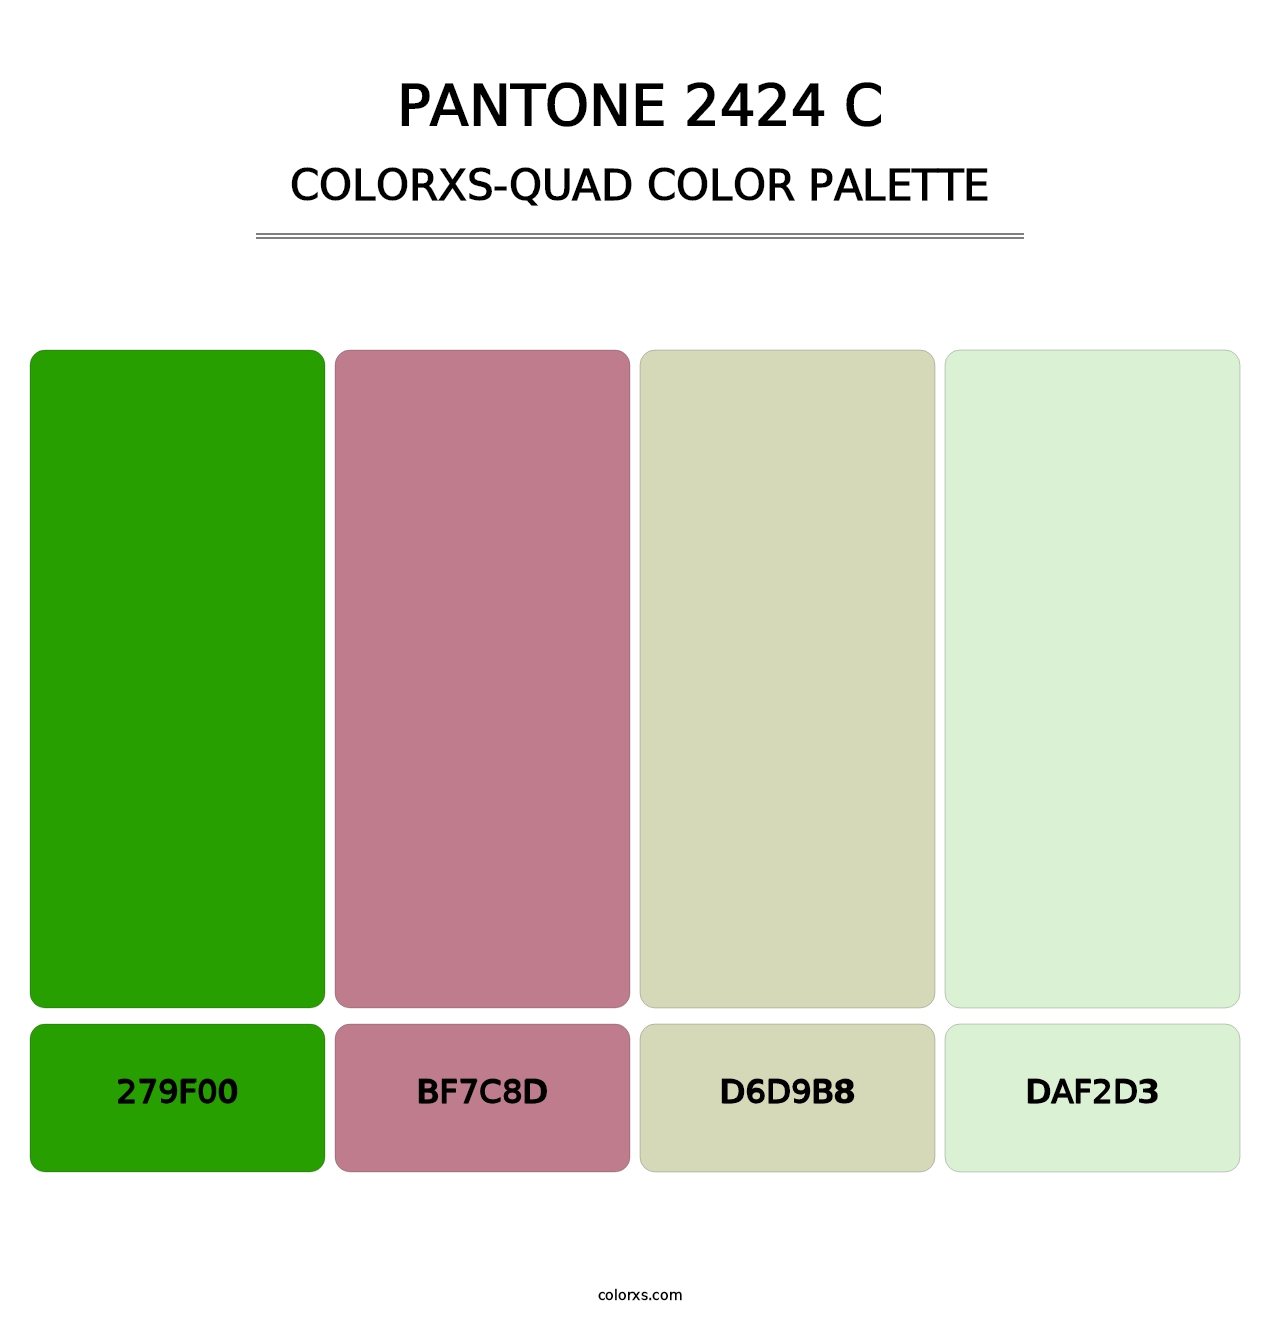 PANTONE 2424 C - Colorxs Quad Palette